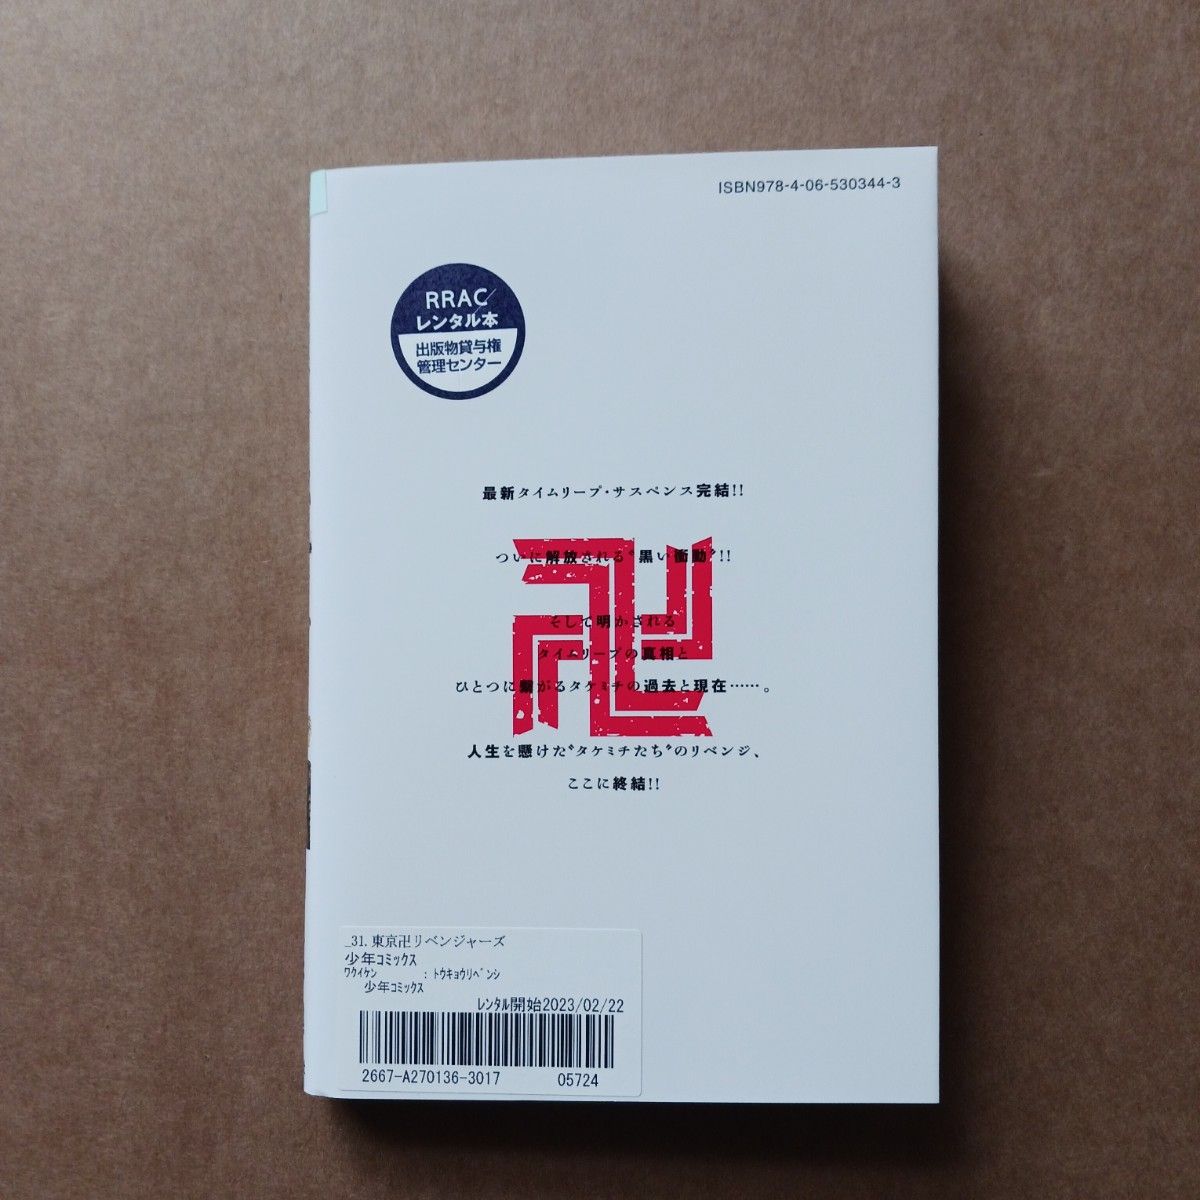 東京卍リベンジャーズ 31巻 レンタル落ち